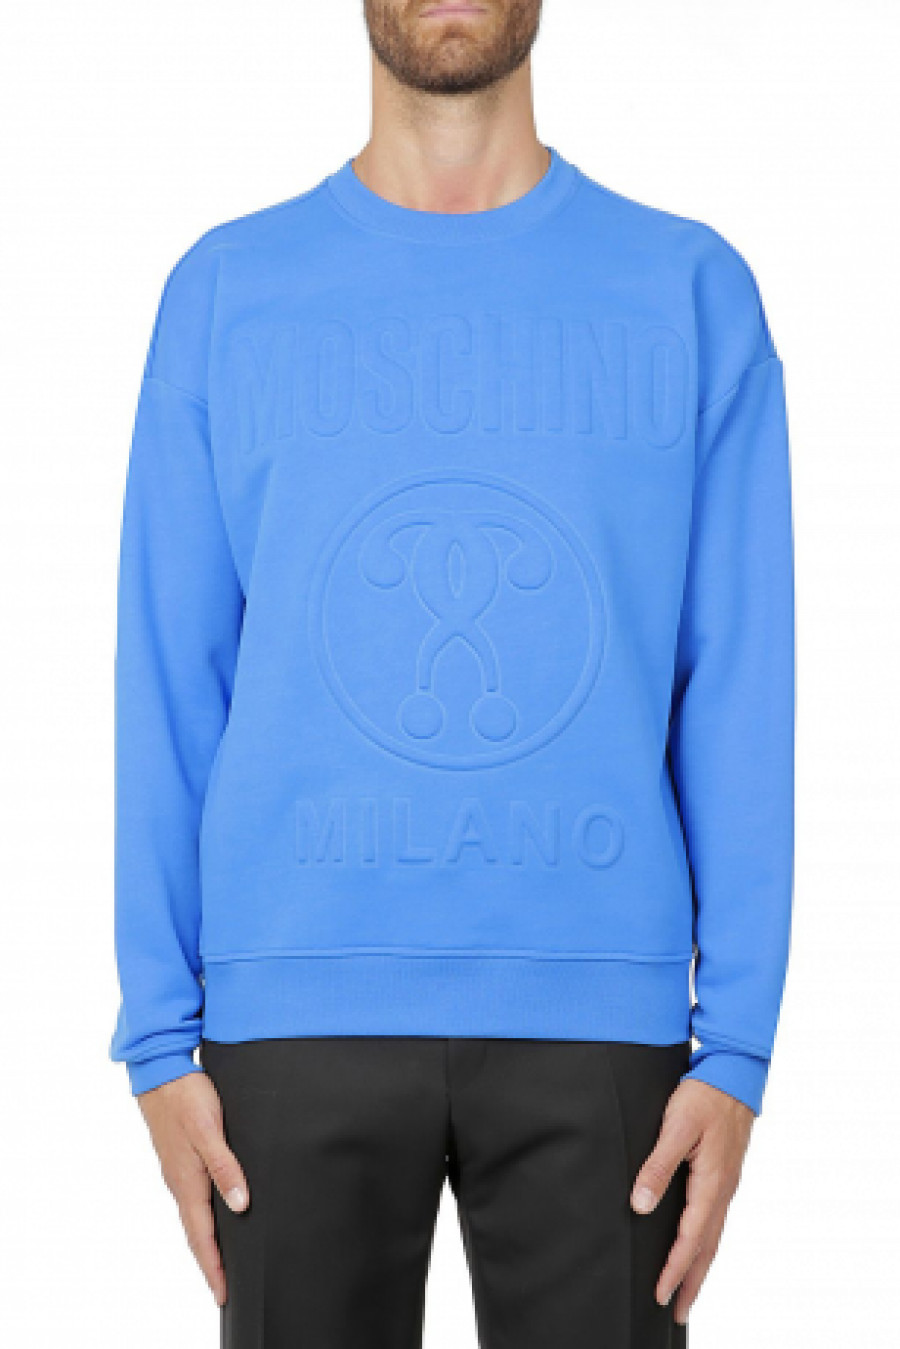 Moschino Men's sweatshirt cotton fleece Embossed Double Question Mark blue